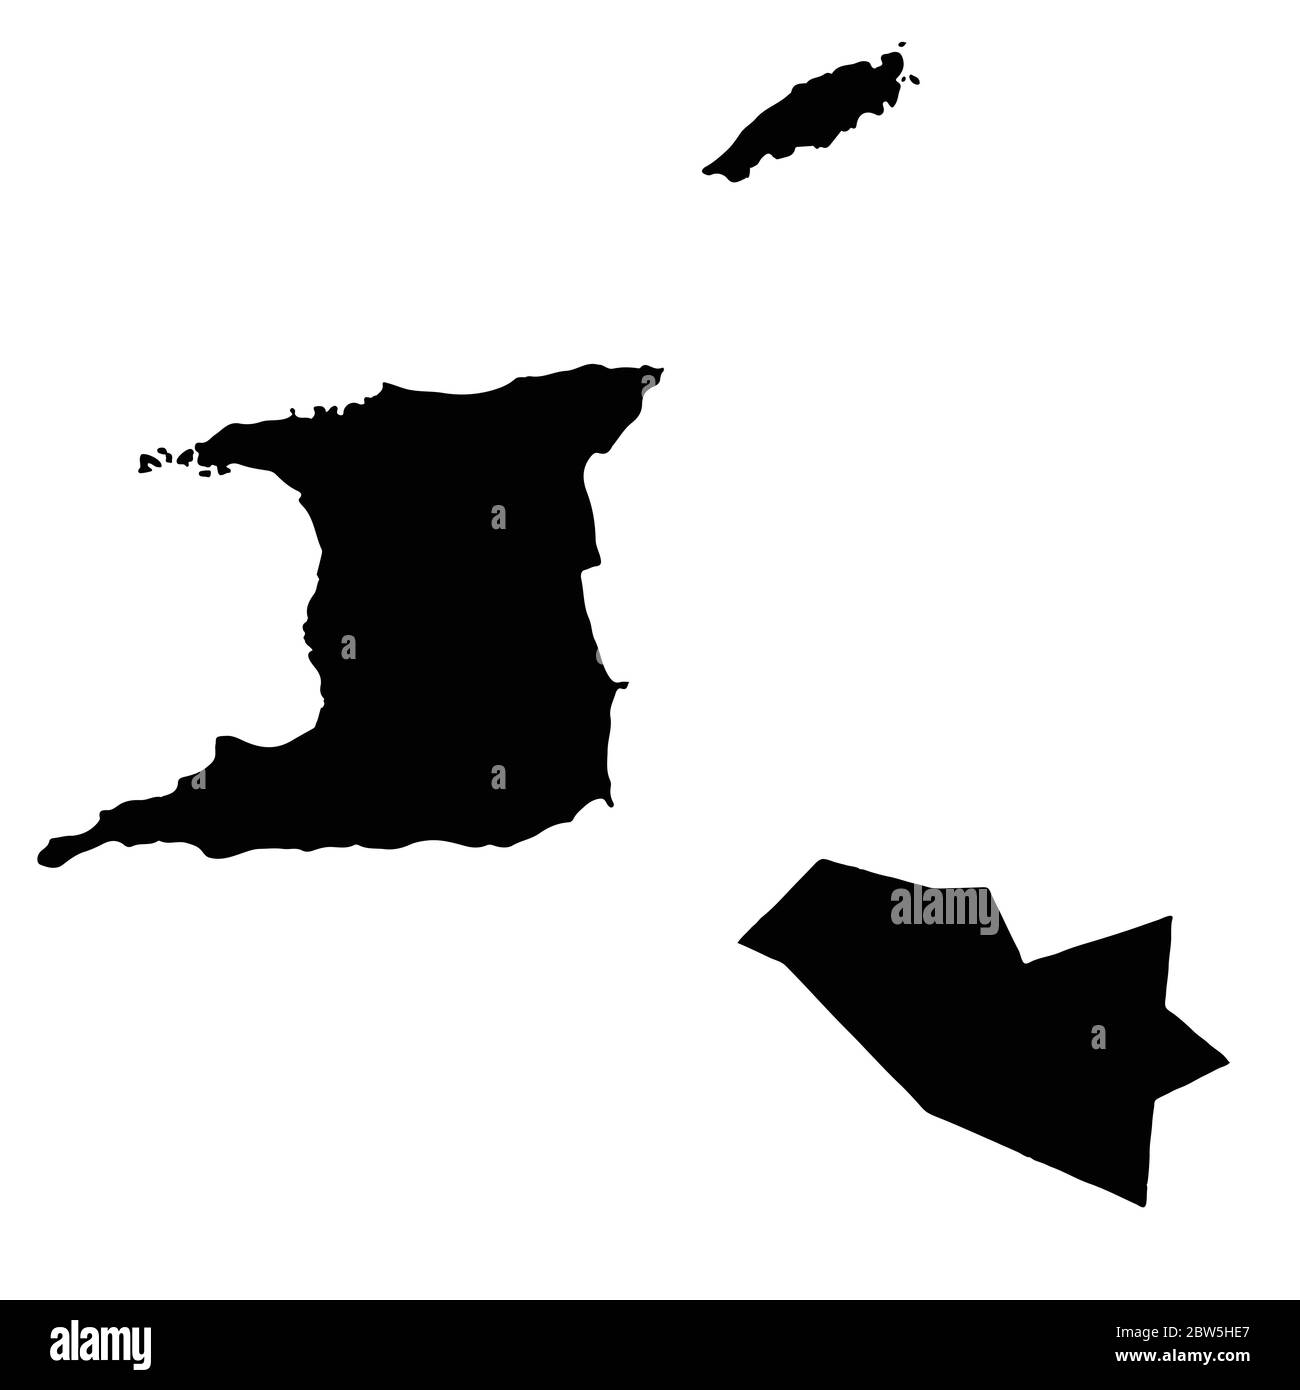 Carte vectorielle Trinité-et-Tobago et Port d'Espagne. Pays et capitale. Illustration de vecteur isolé. Noir sur fond blanc. Illustration de l'EPS 10. Illustration de Vecteur